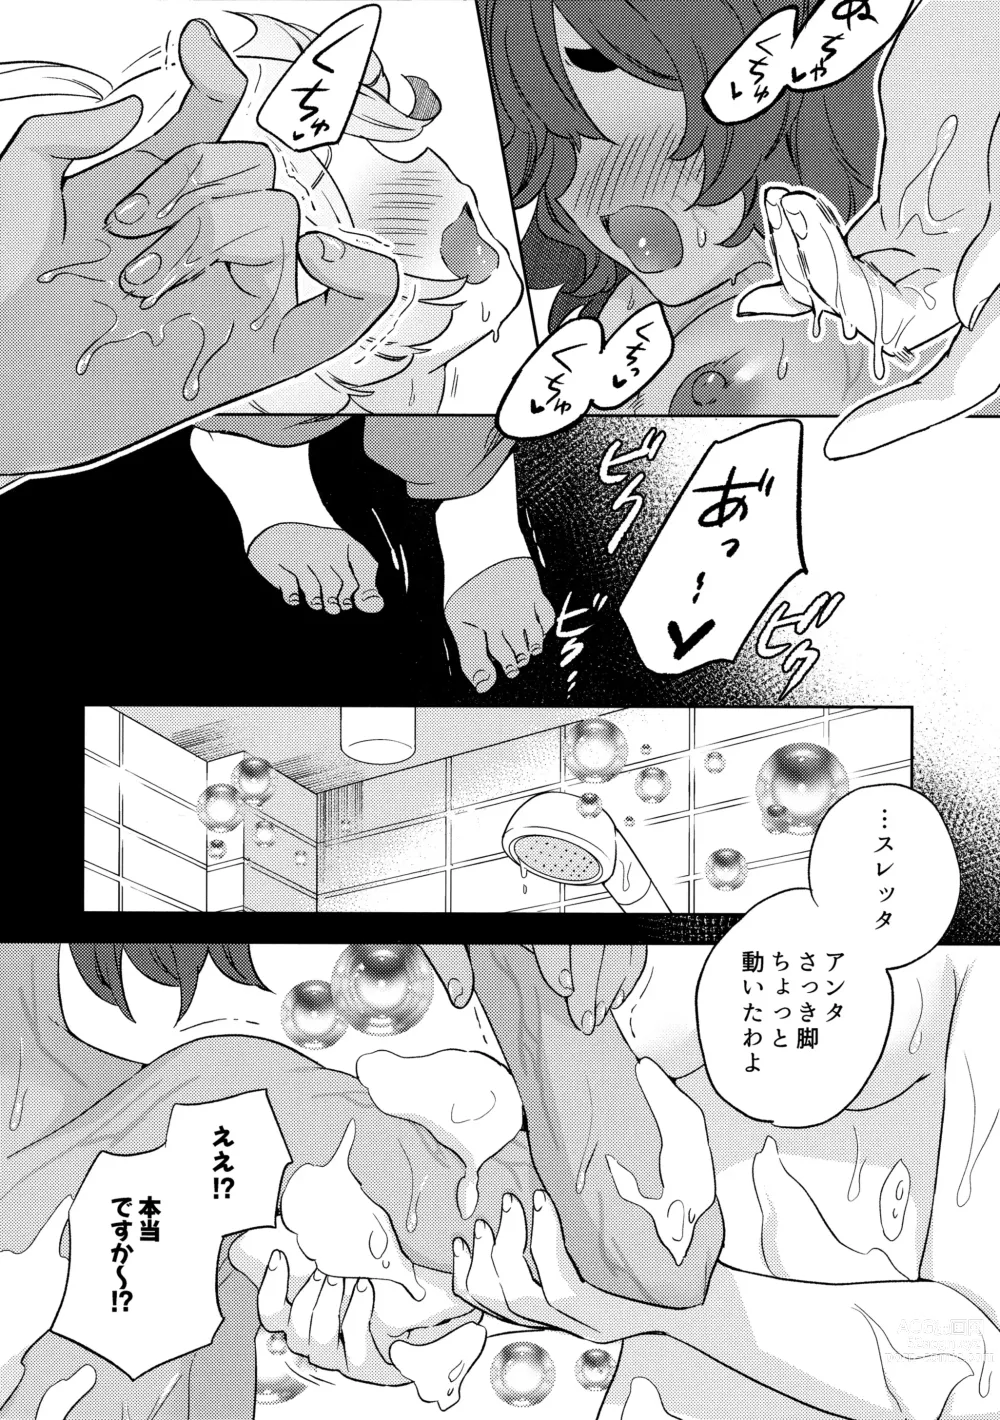 Page 38 of doujinshi Kienai Ato, Egao No Riyuu, Onaka Ga Suite.